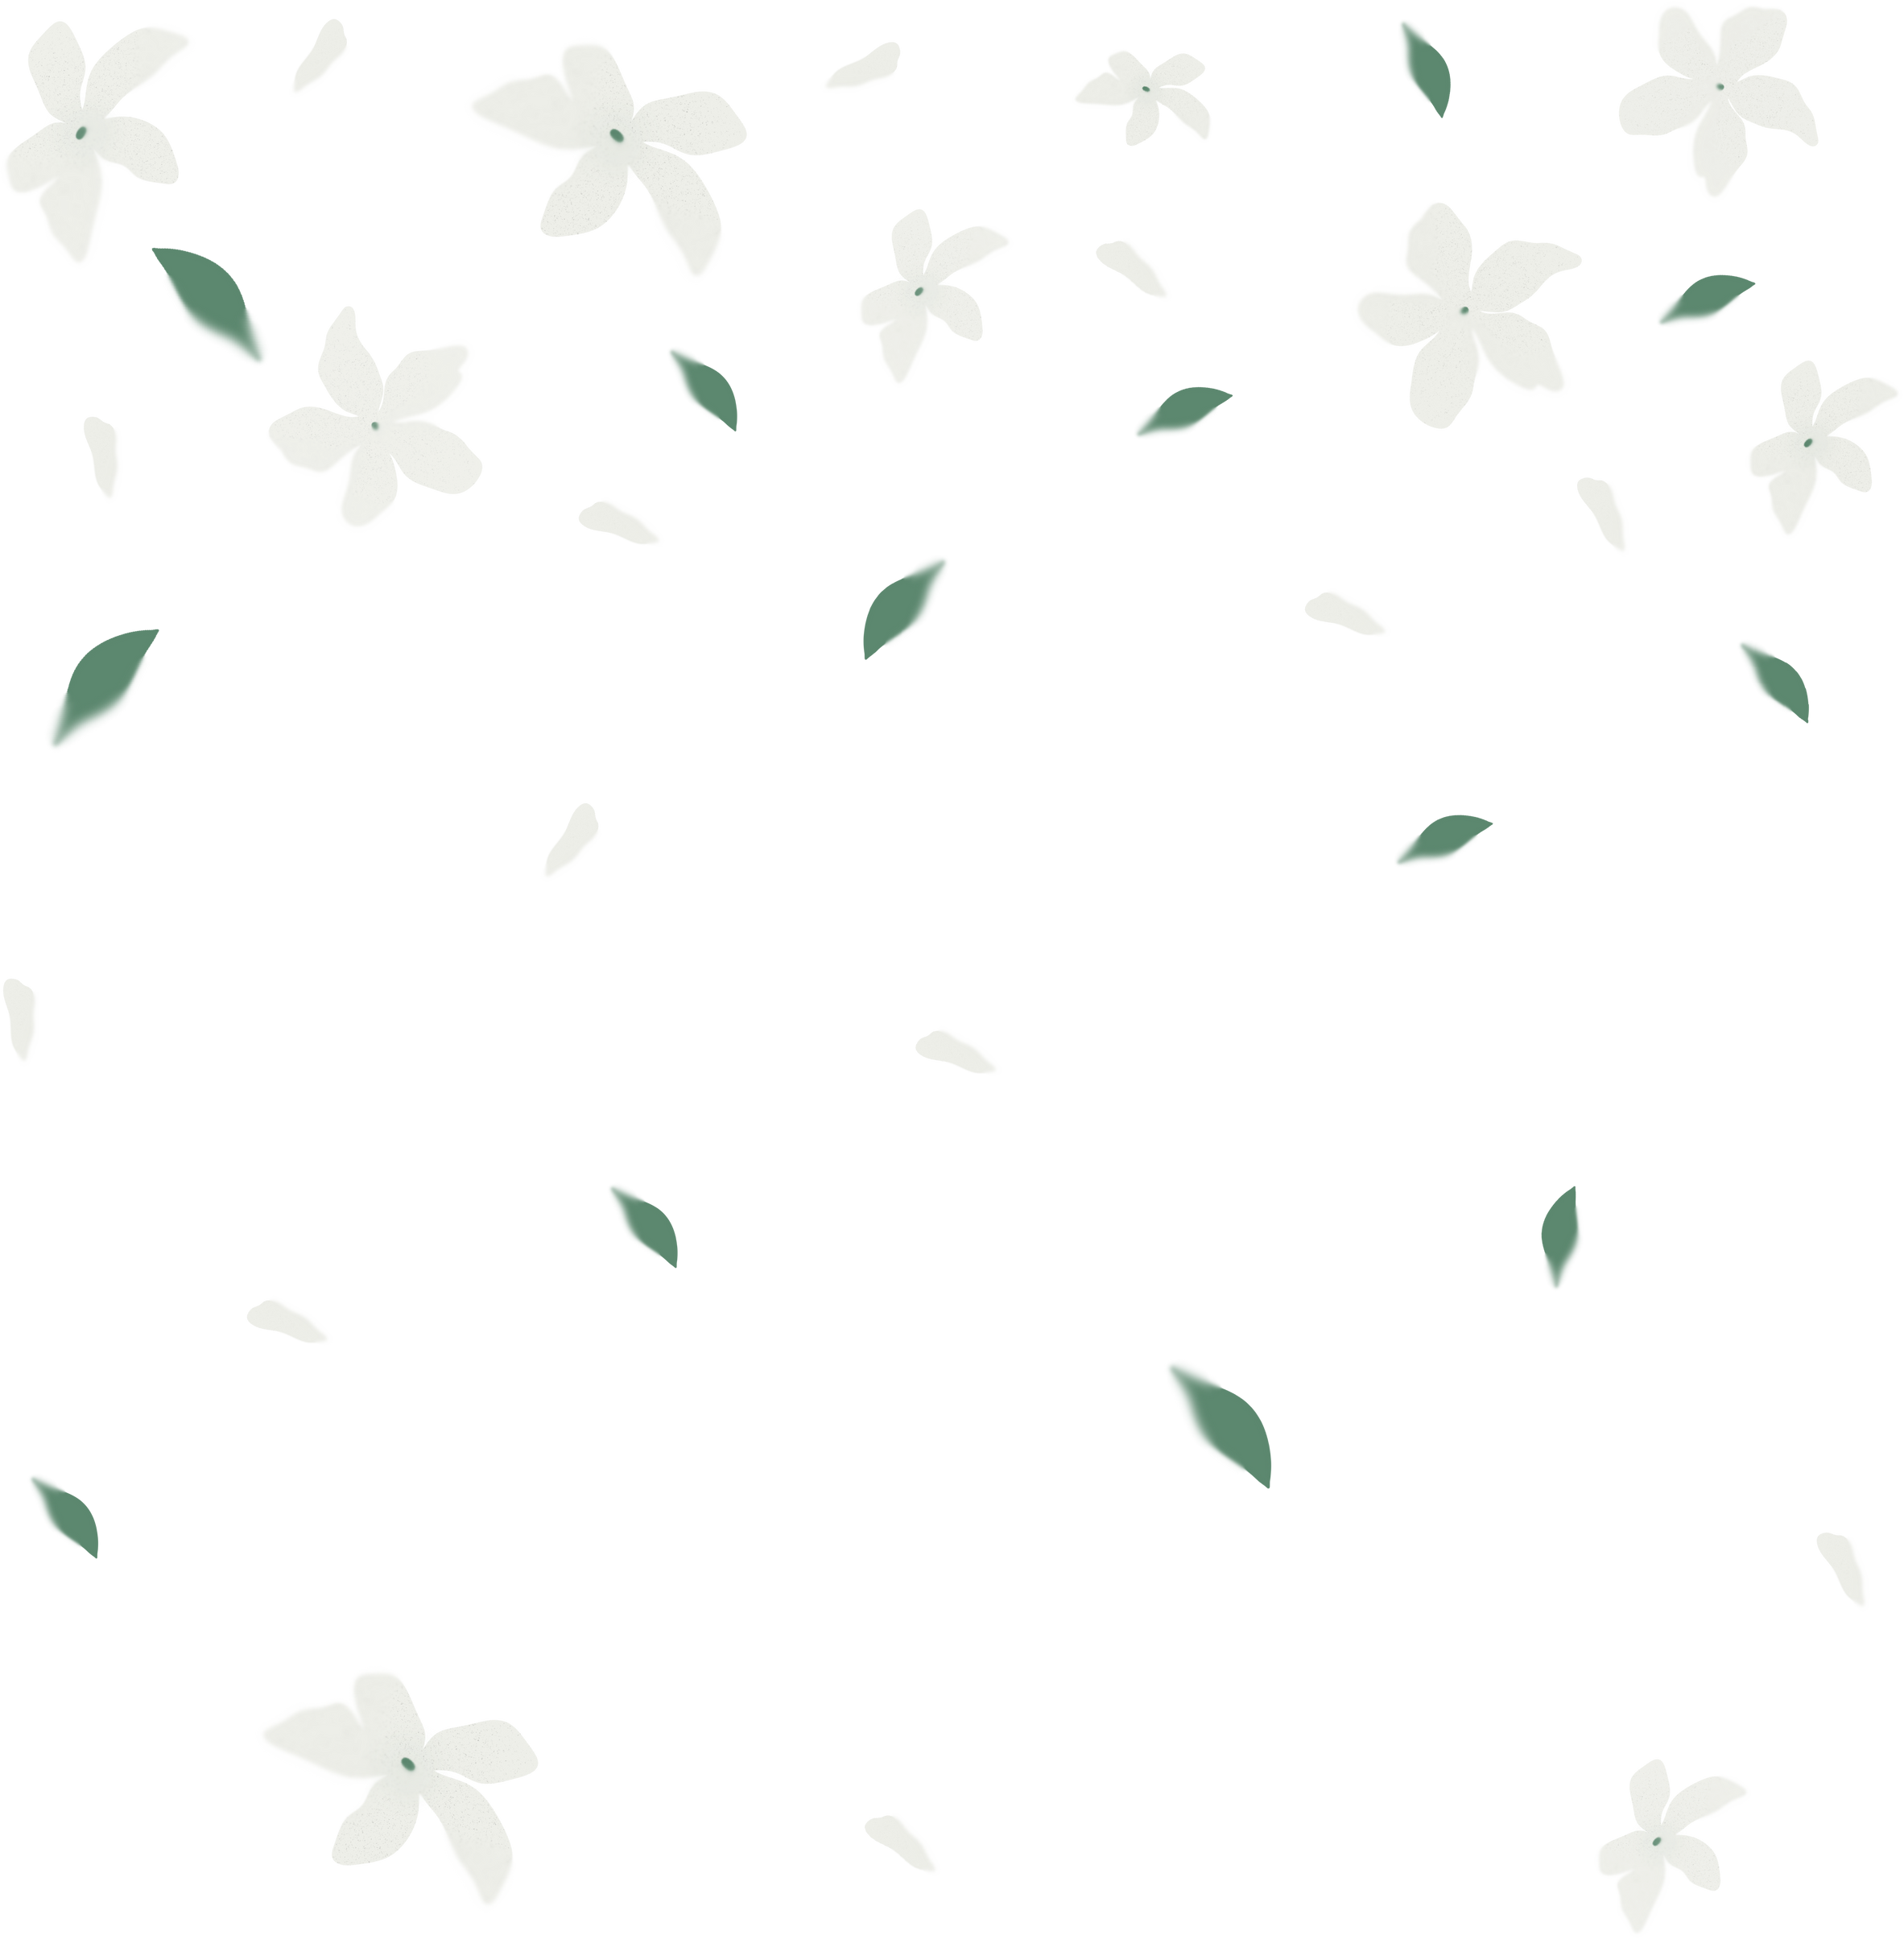 Blurred White Jasmine Flowers 